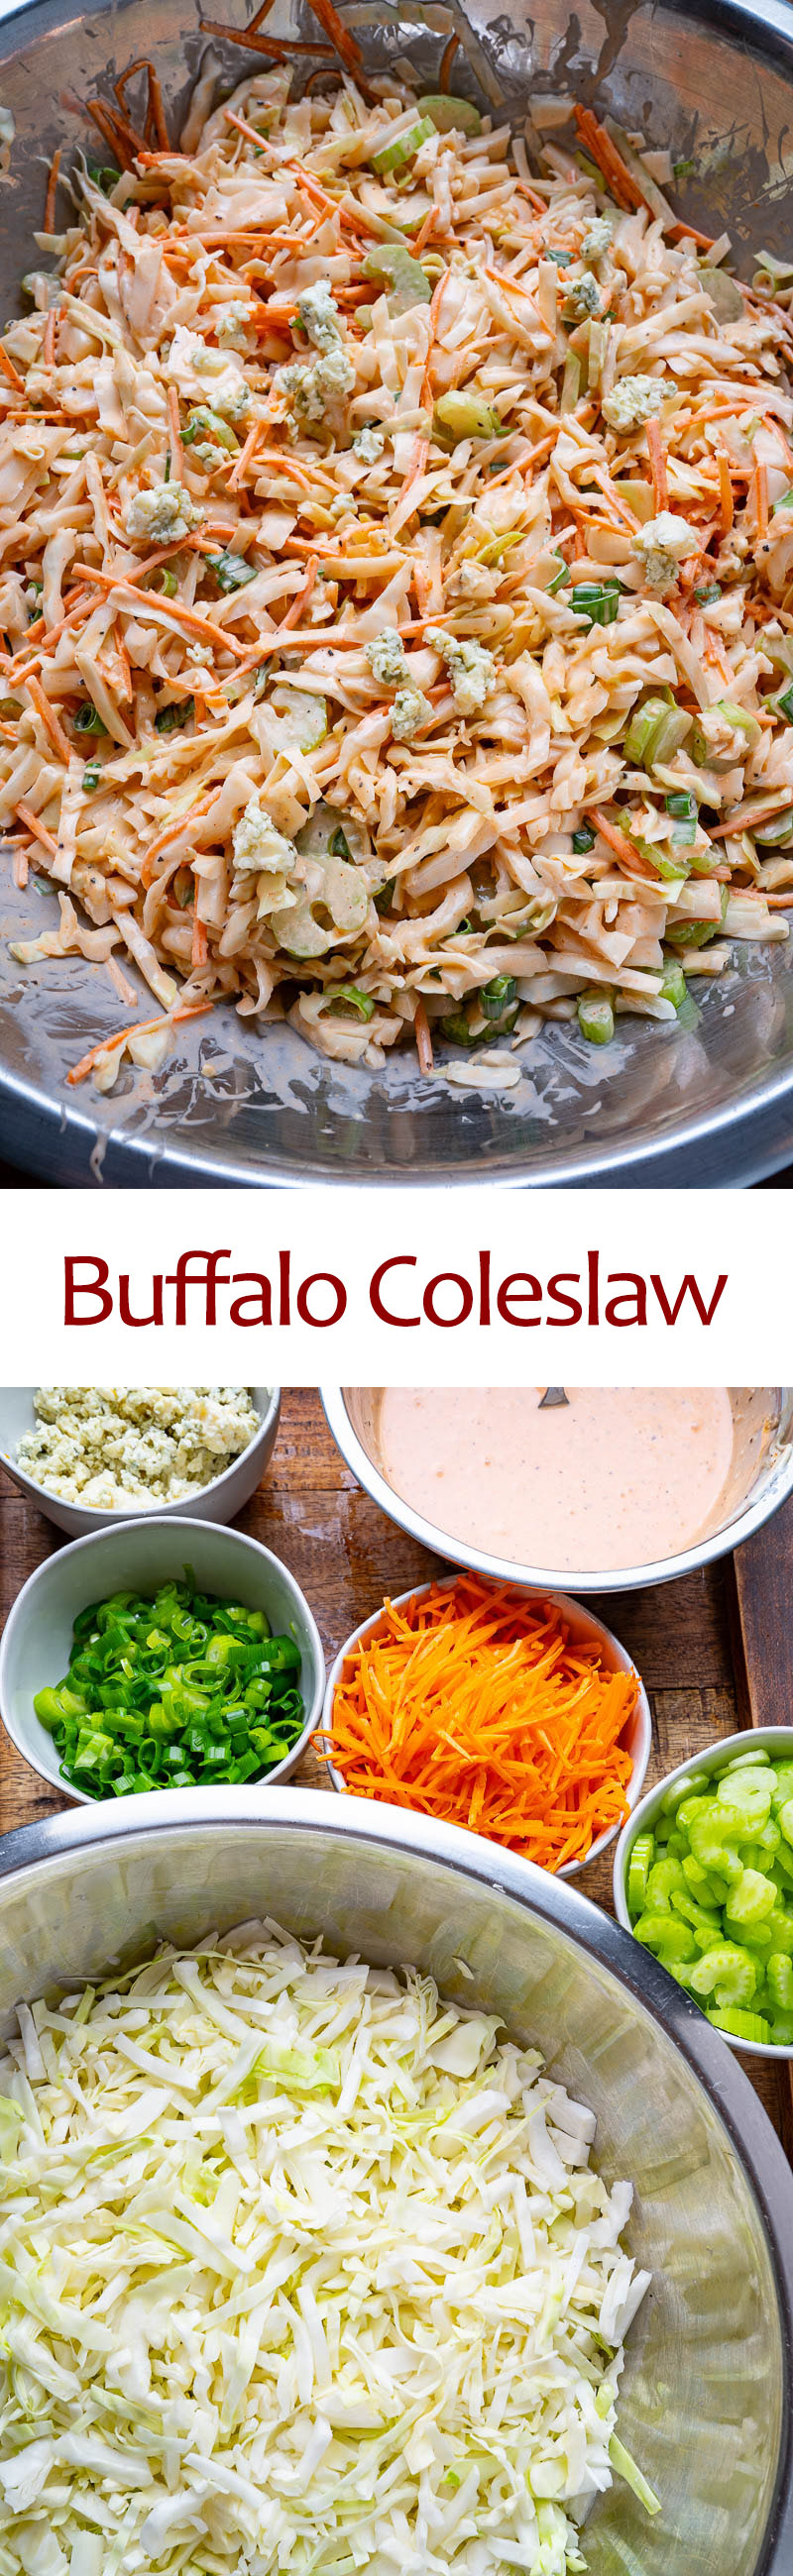 Buffalo Coleslaw